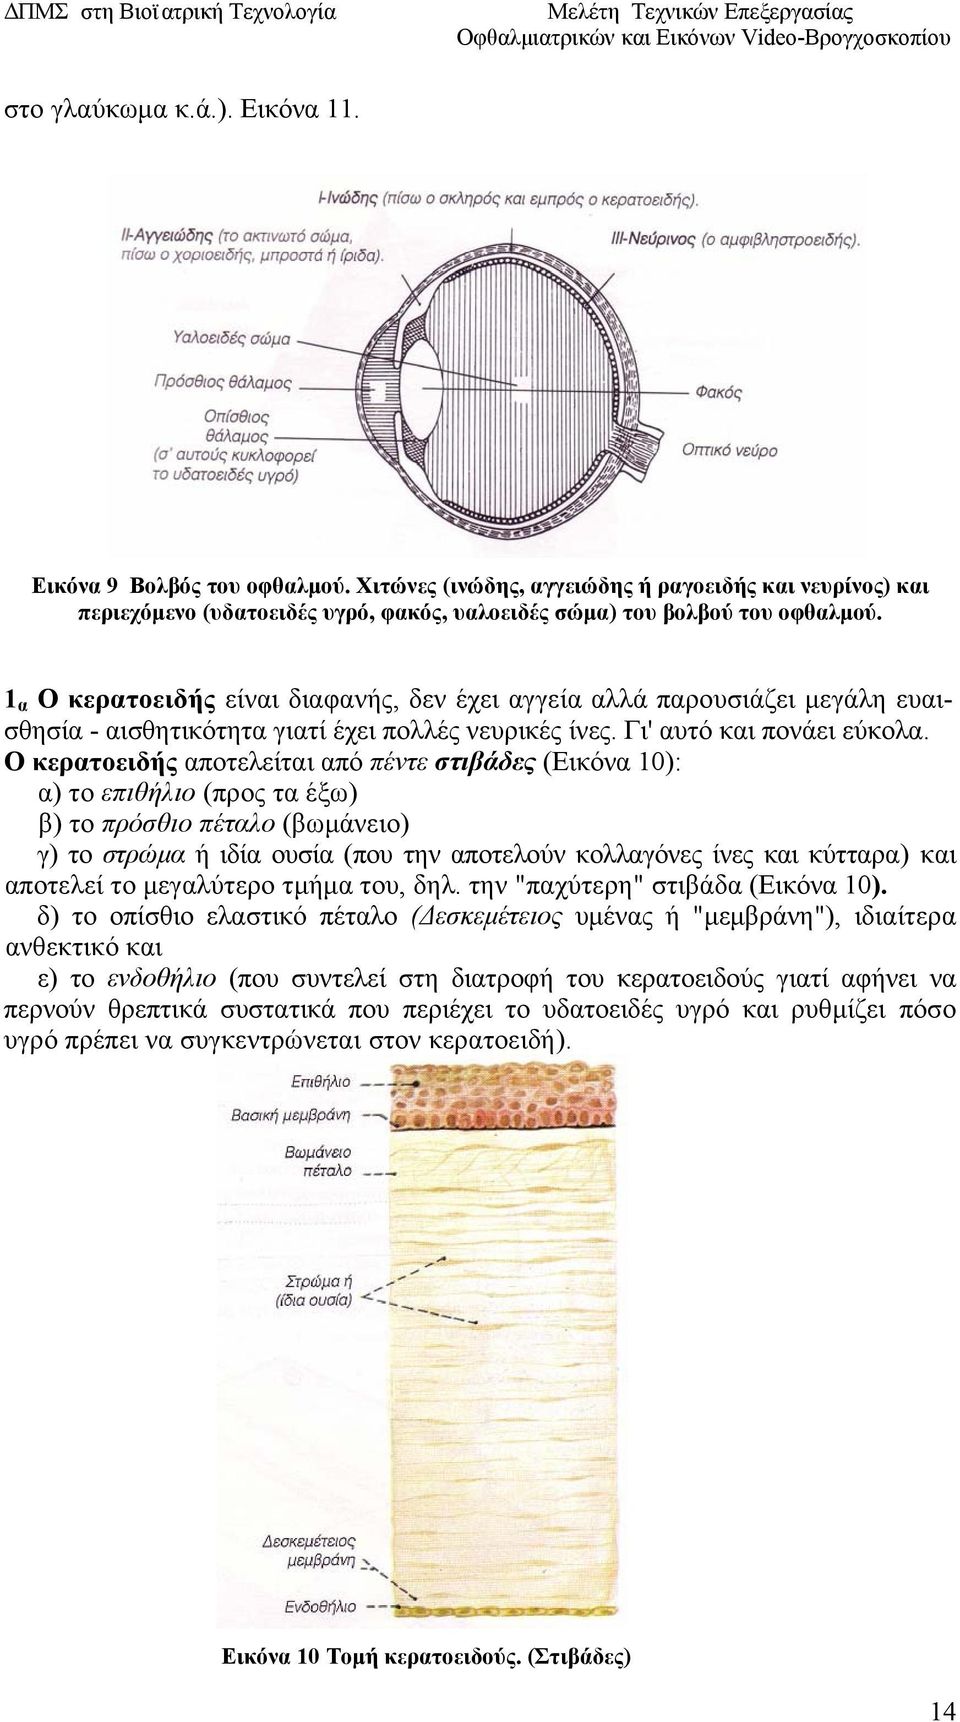 Ο κερατοειδής αποτελείται από πέντε στιβάδες (Εικόνα 10): α) το επιθήλιο (προς τα έξω) β) το πρόσθιο πέταλο (βωμάνειο) γ) το στρώμα ή ιδία ουσία (που την αποτελούν κολλαγόνες ίνες και κύτταρα) και